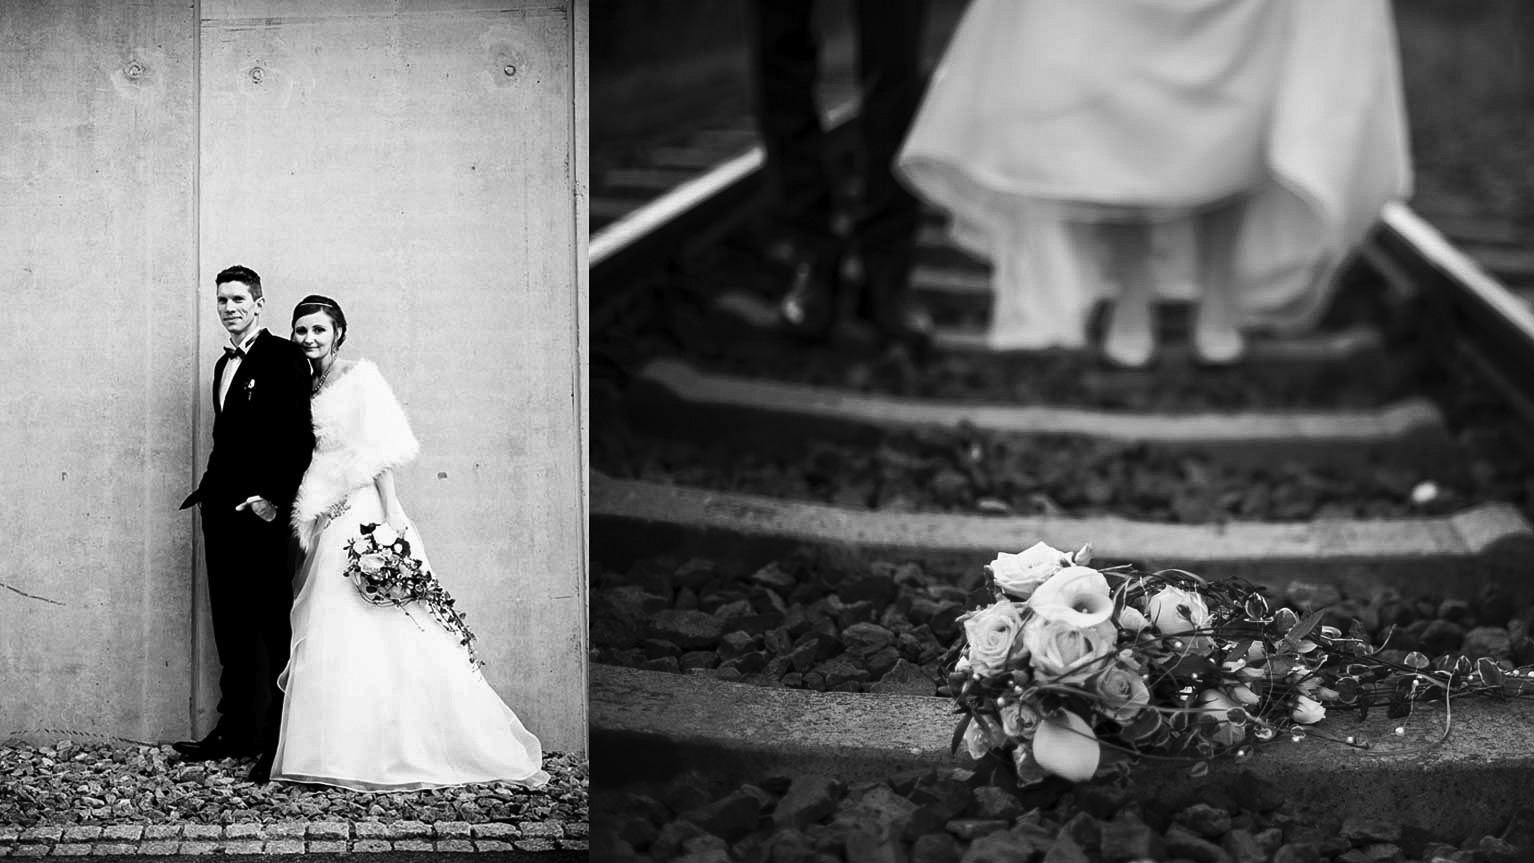 Tanja-Truoel-Truöl-Hochzeit-Fotografie-Marriage-perfect-day-happy-day-love-for-ever-Liebe-Paarfoto-Hochzeitsfotos-Freiburg-im-Breisgau-Fotografin